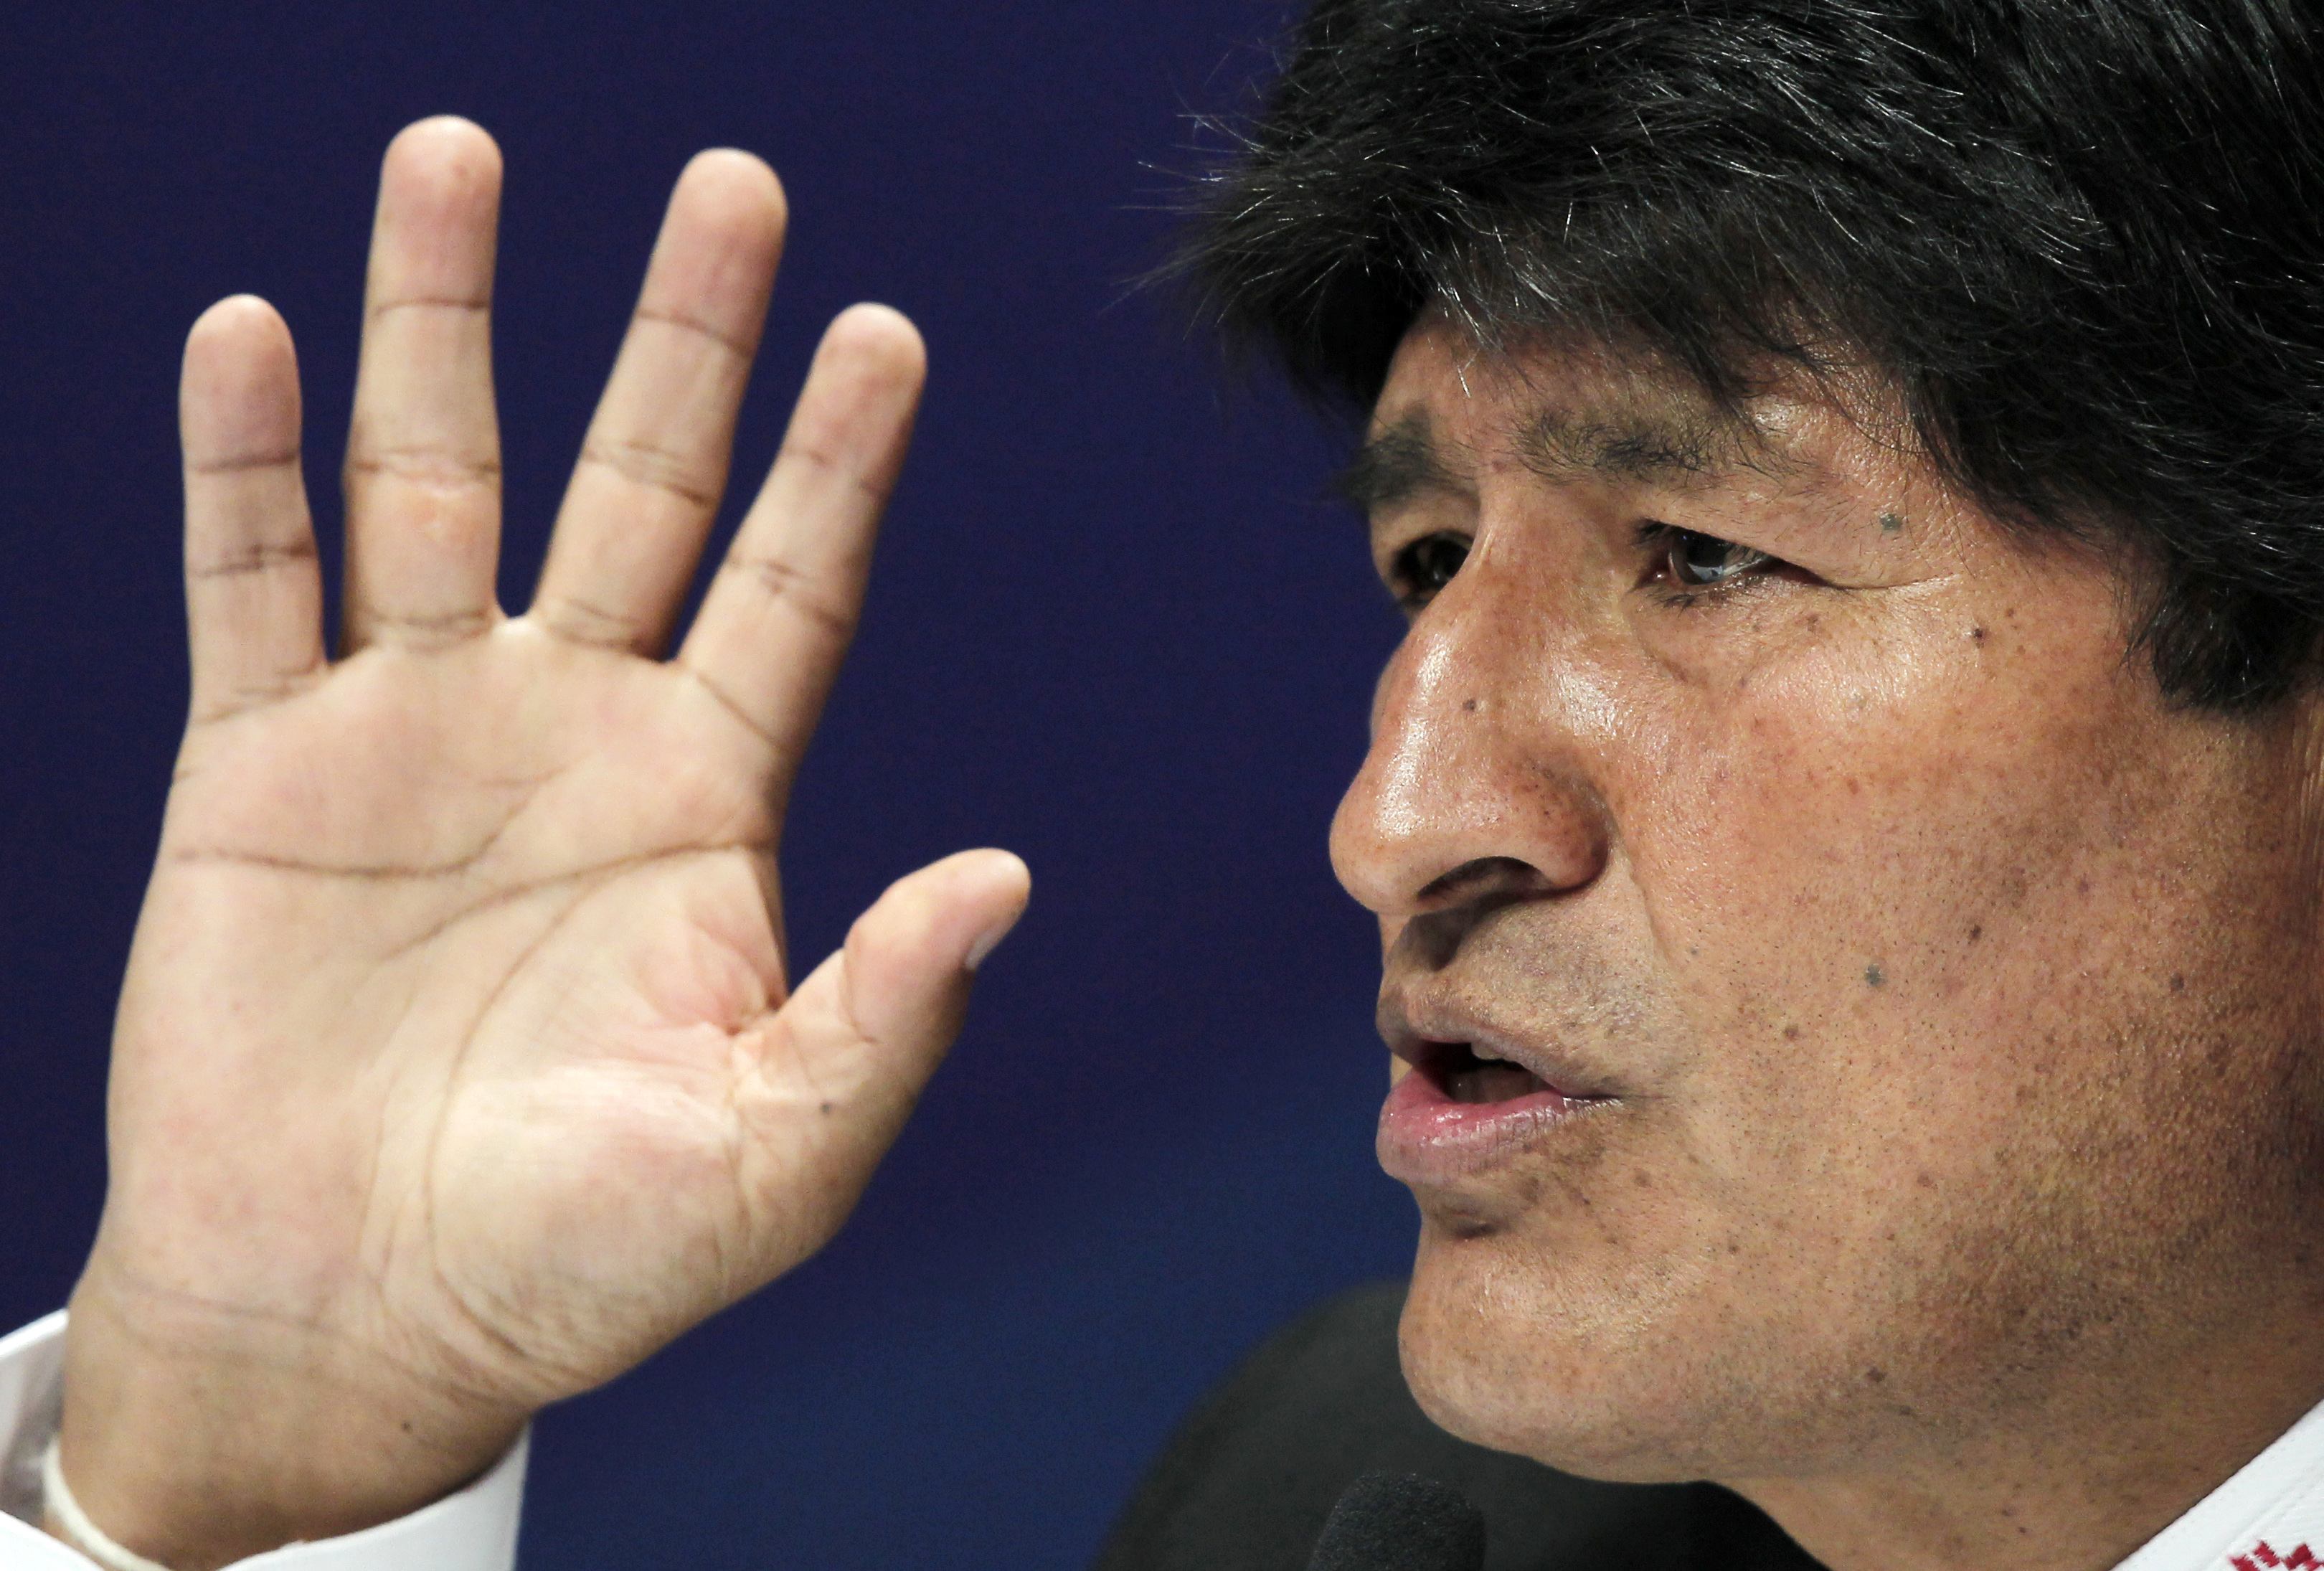 El escándalo amoroso y de corrupción de Evo Morales antes del referéndum